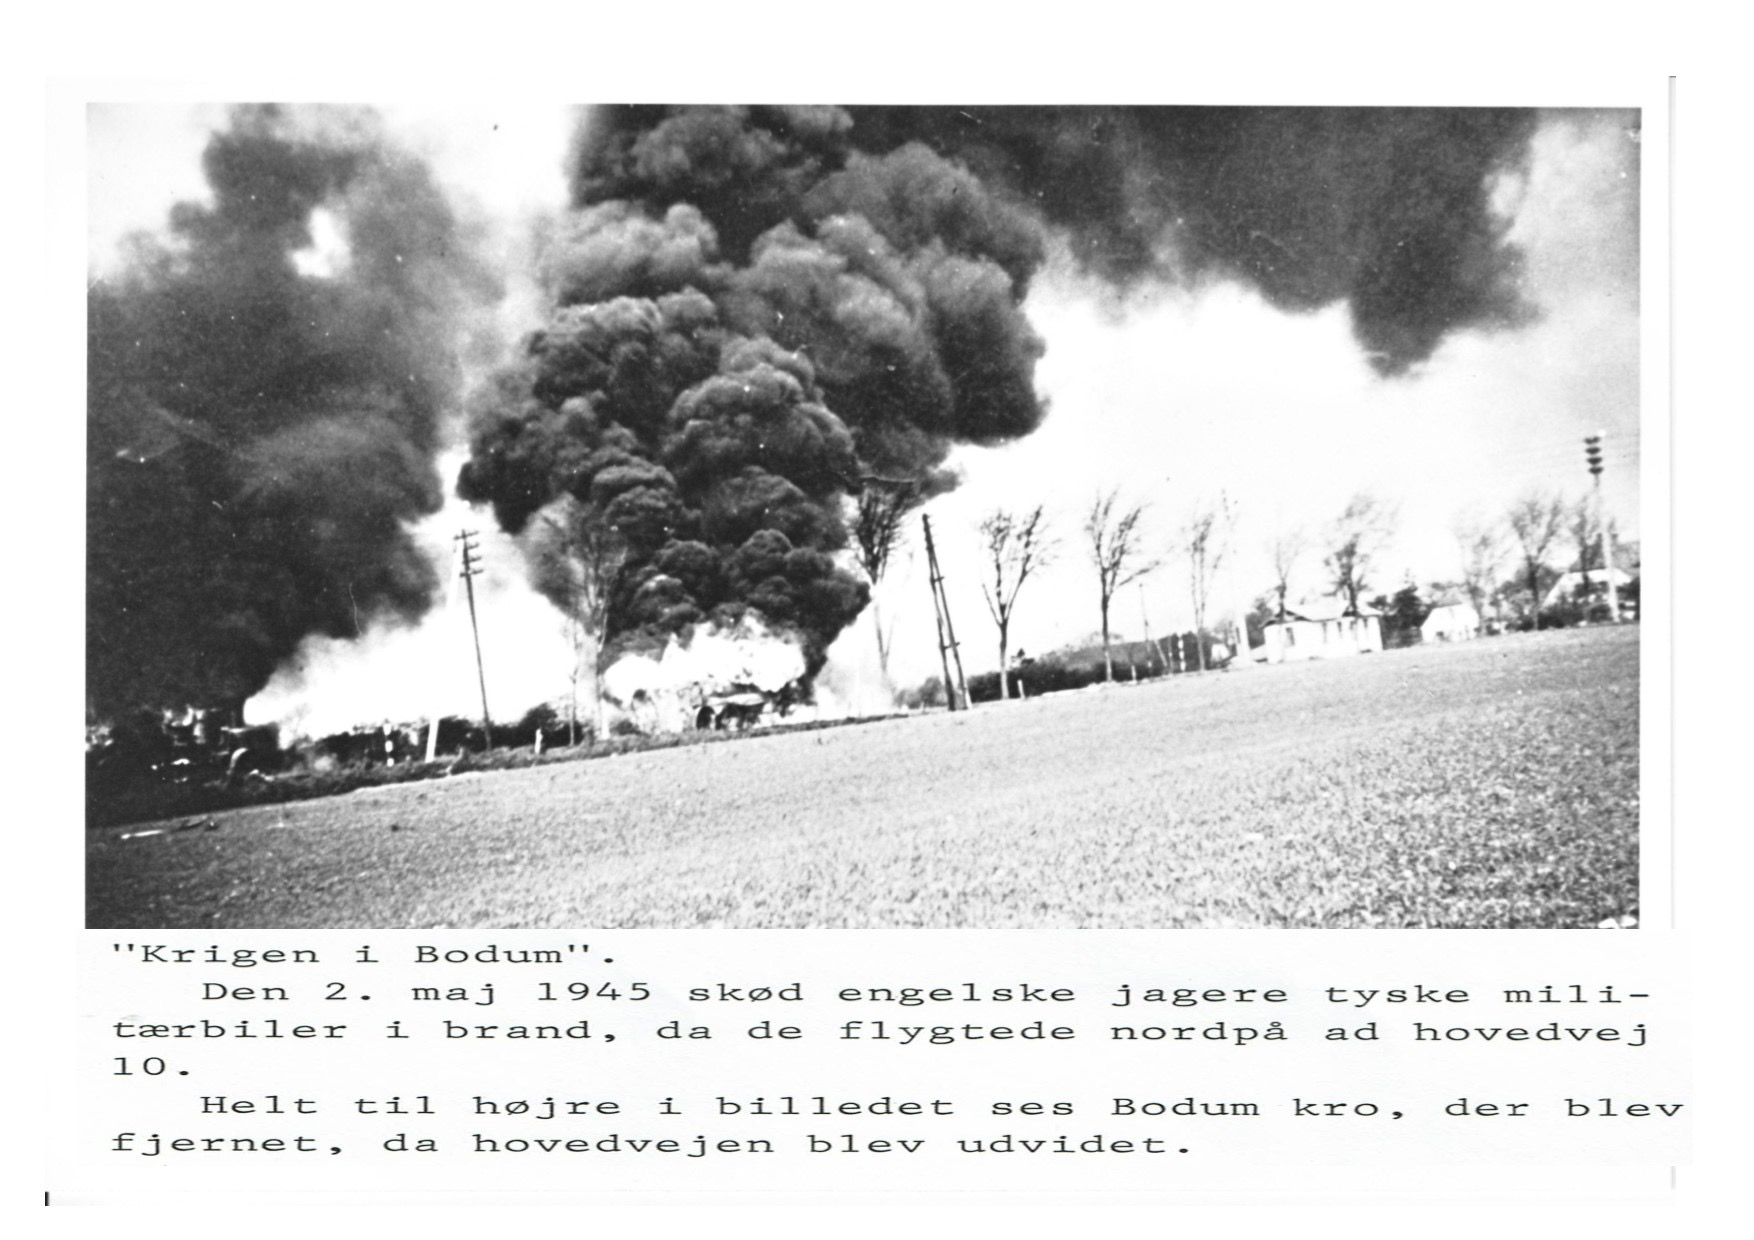 Krigen i Bodum 1945